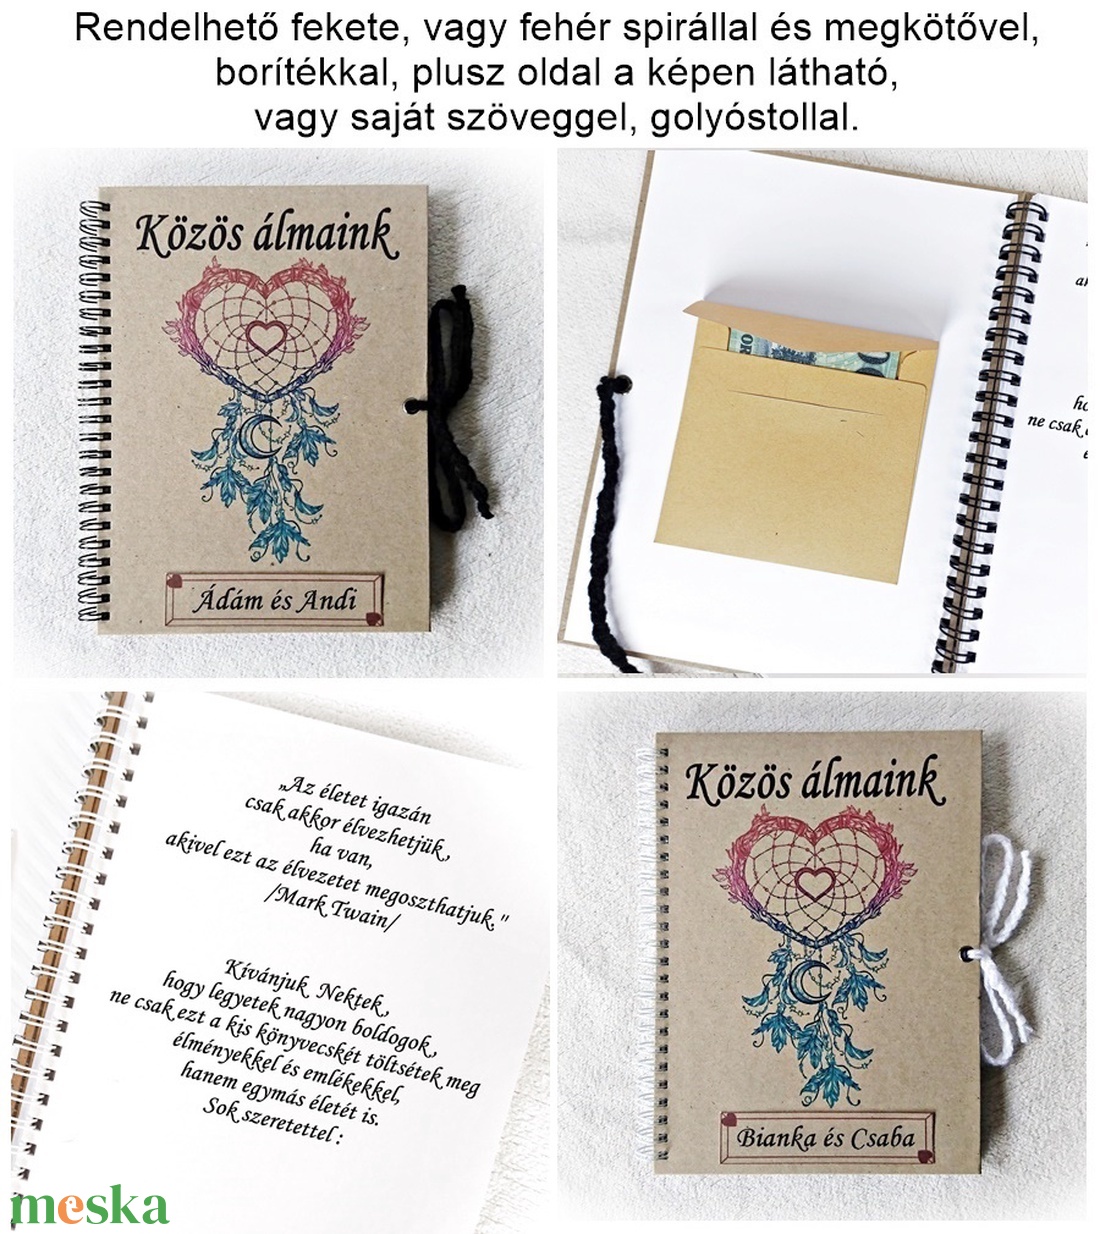 Bakancslista napló pároknak, esküvőre nászajándék belül borítékkal, pénzátadó, napló, névre szóló  - esküvő - emlék & ajándék - nászajándék - Meska.hu